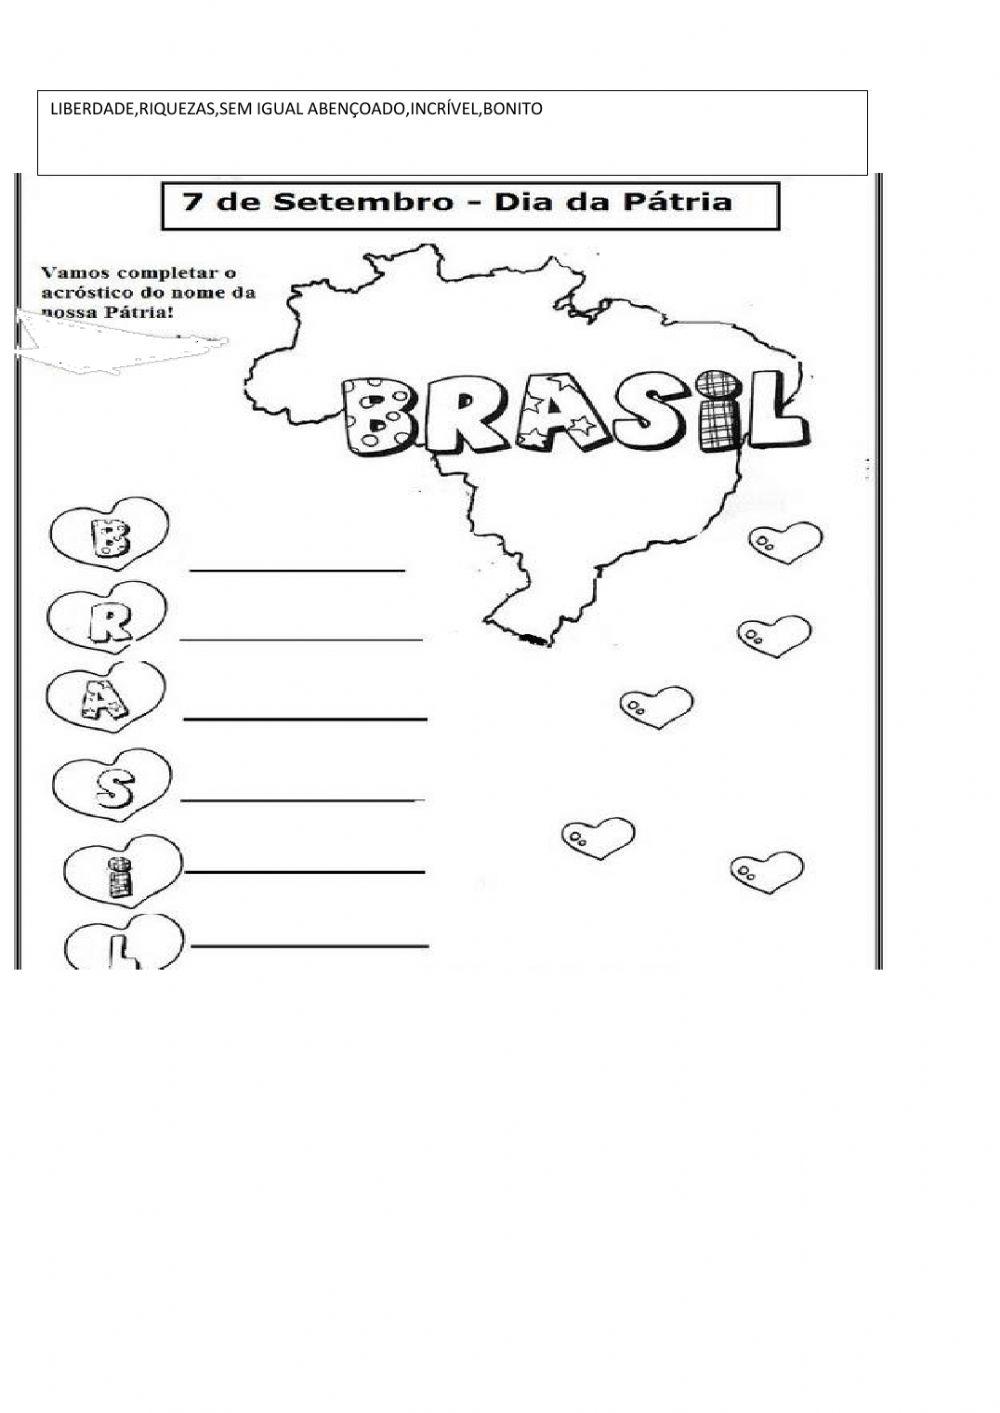 ACRÓSTICO COM A PALAVRA BRASIL online exercise for